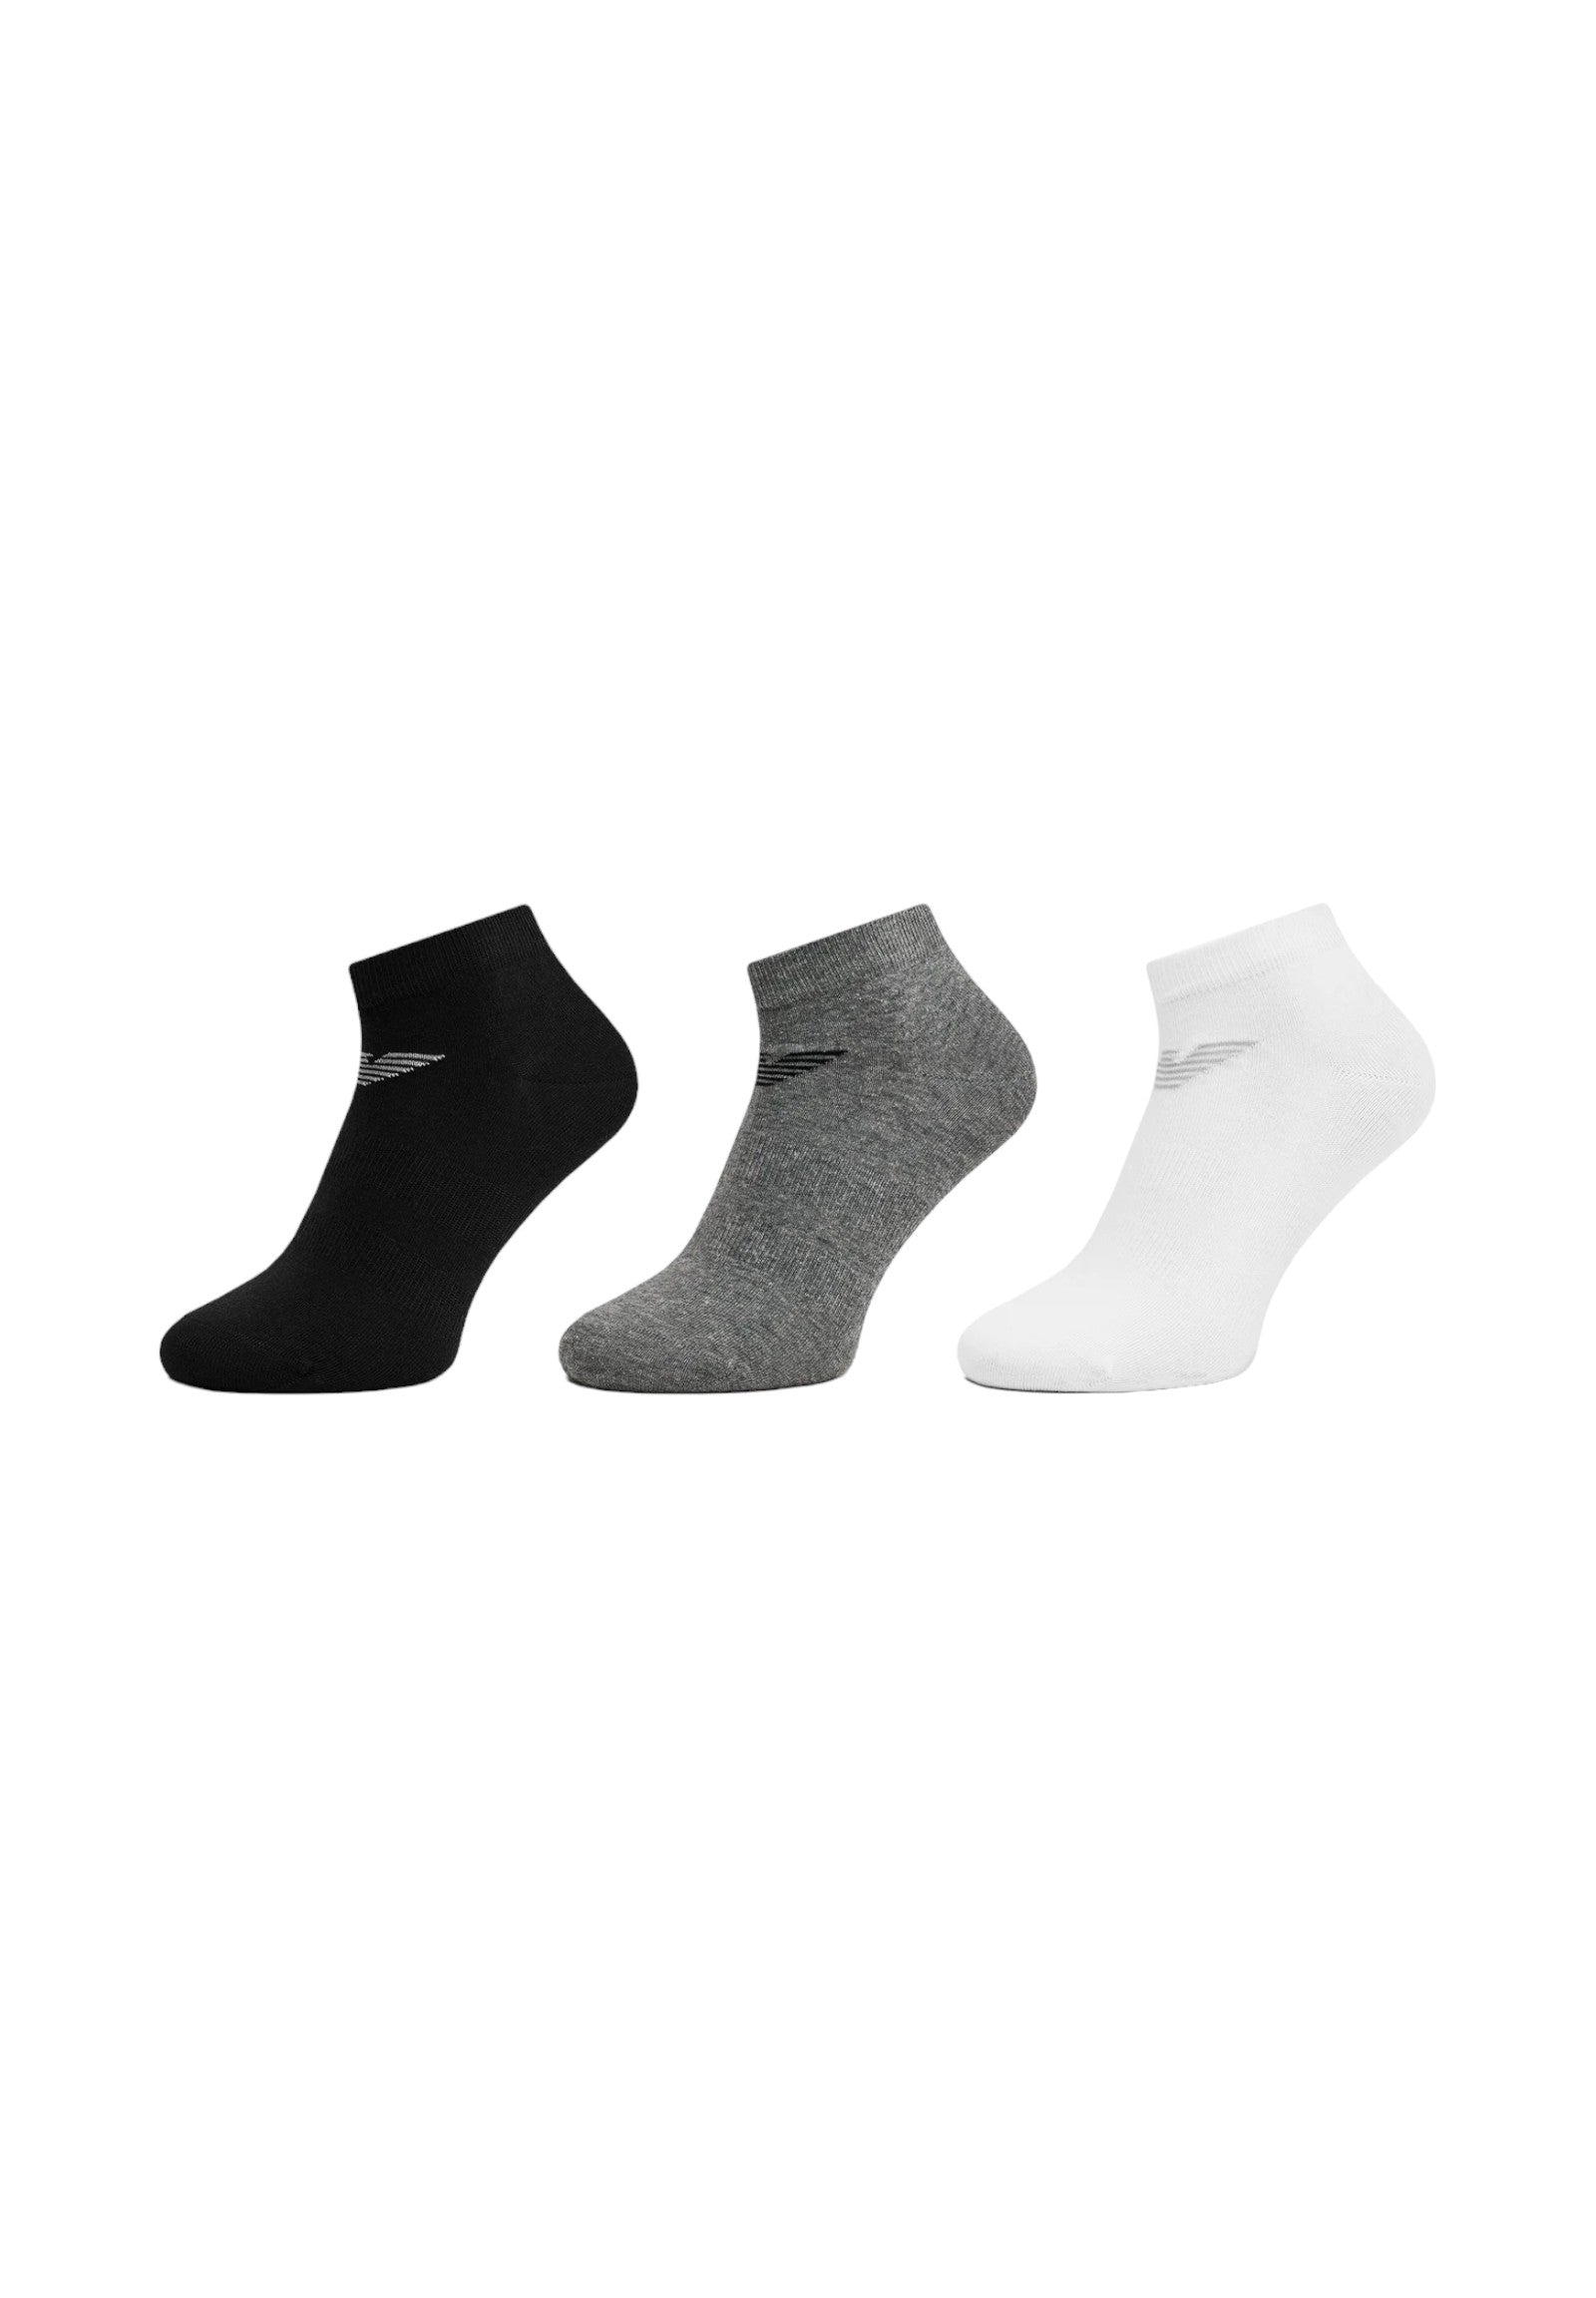 Socks 300048 Black, White, Gr Mel